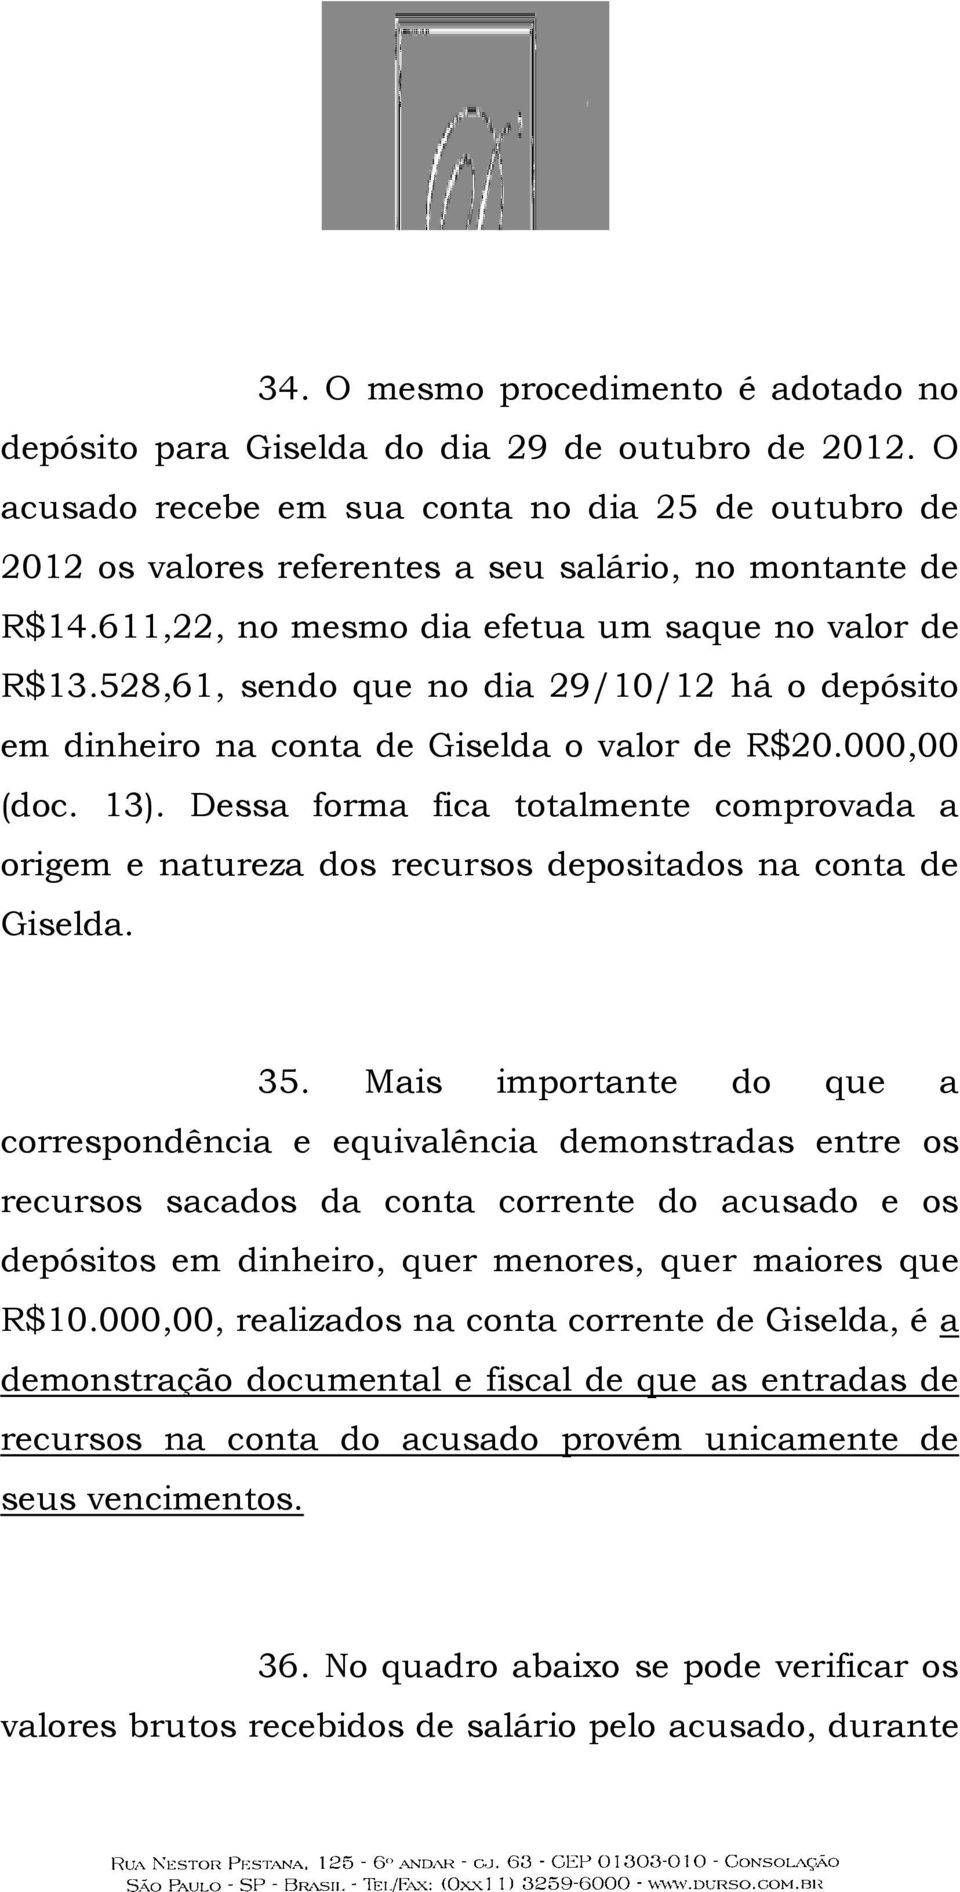 528,61, sendo que no dia 29/10/12 há o depósito em dinheiro na conta de Giselda o valor de R$20.000,00 (doc. 13).